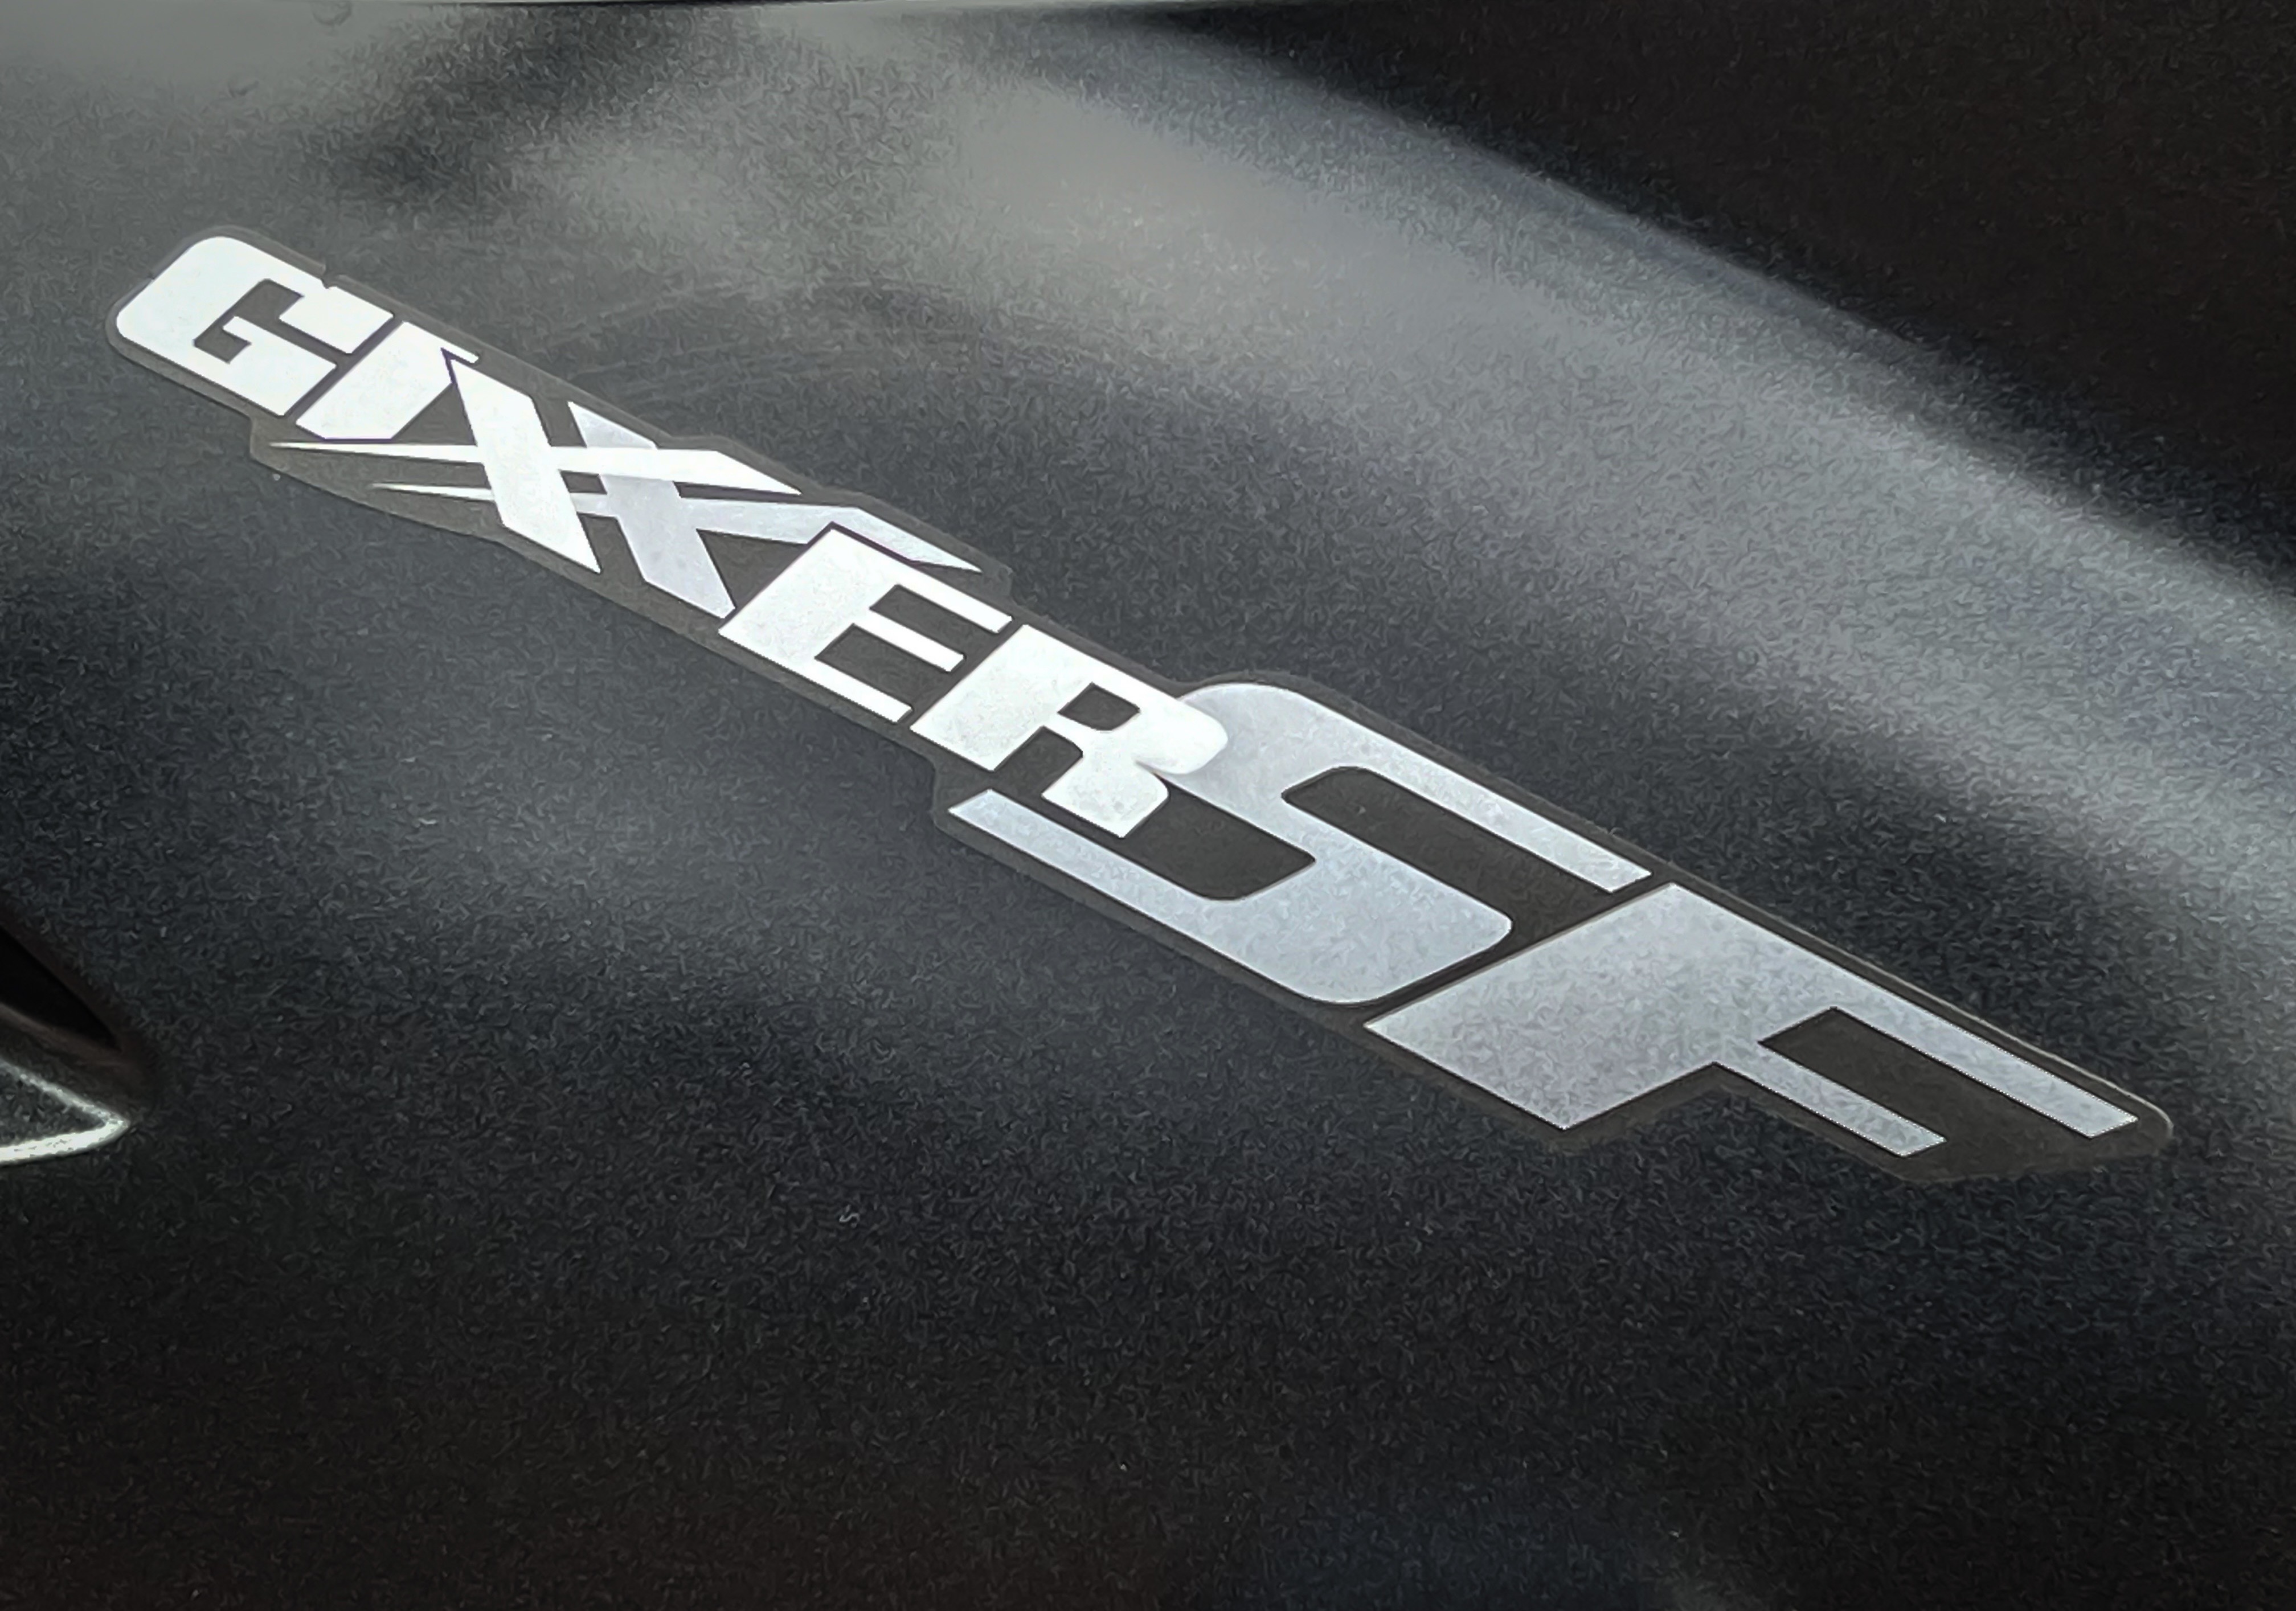 SUZUKI GIXXER 250 SF - 中古/二手車出售中 Suzuki Gixxer SF 250 ABS | 個人自售